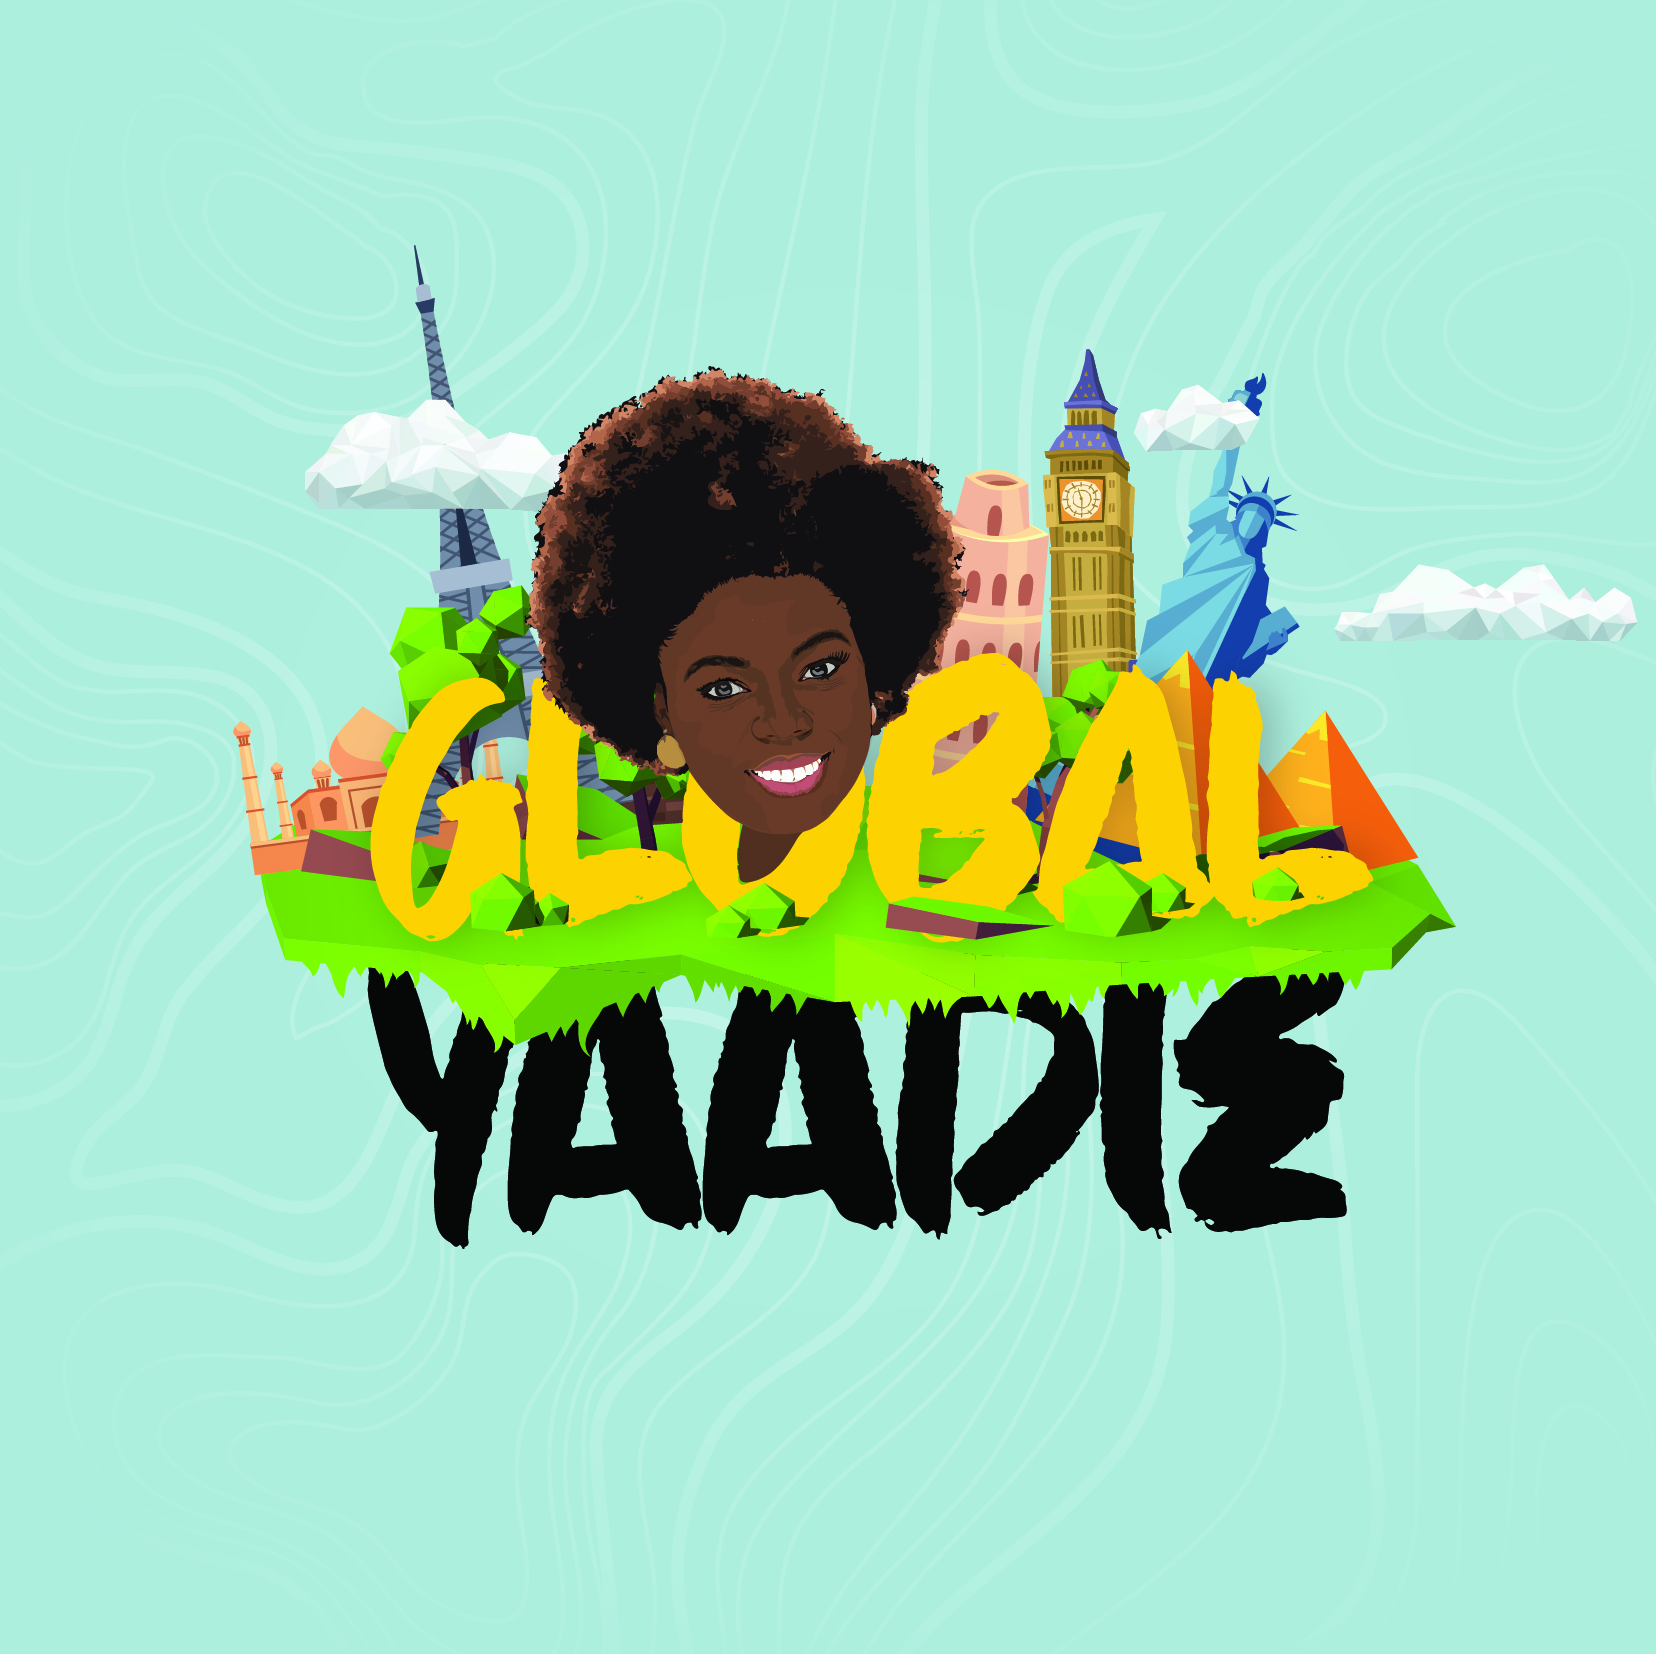 Global Yaadie